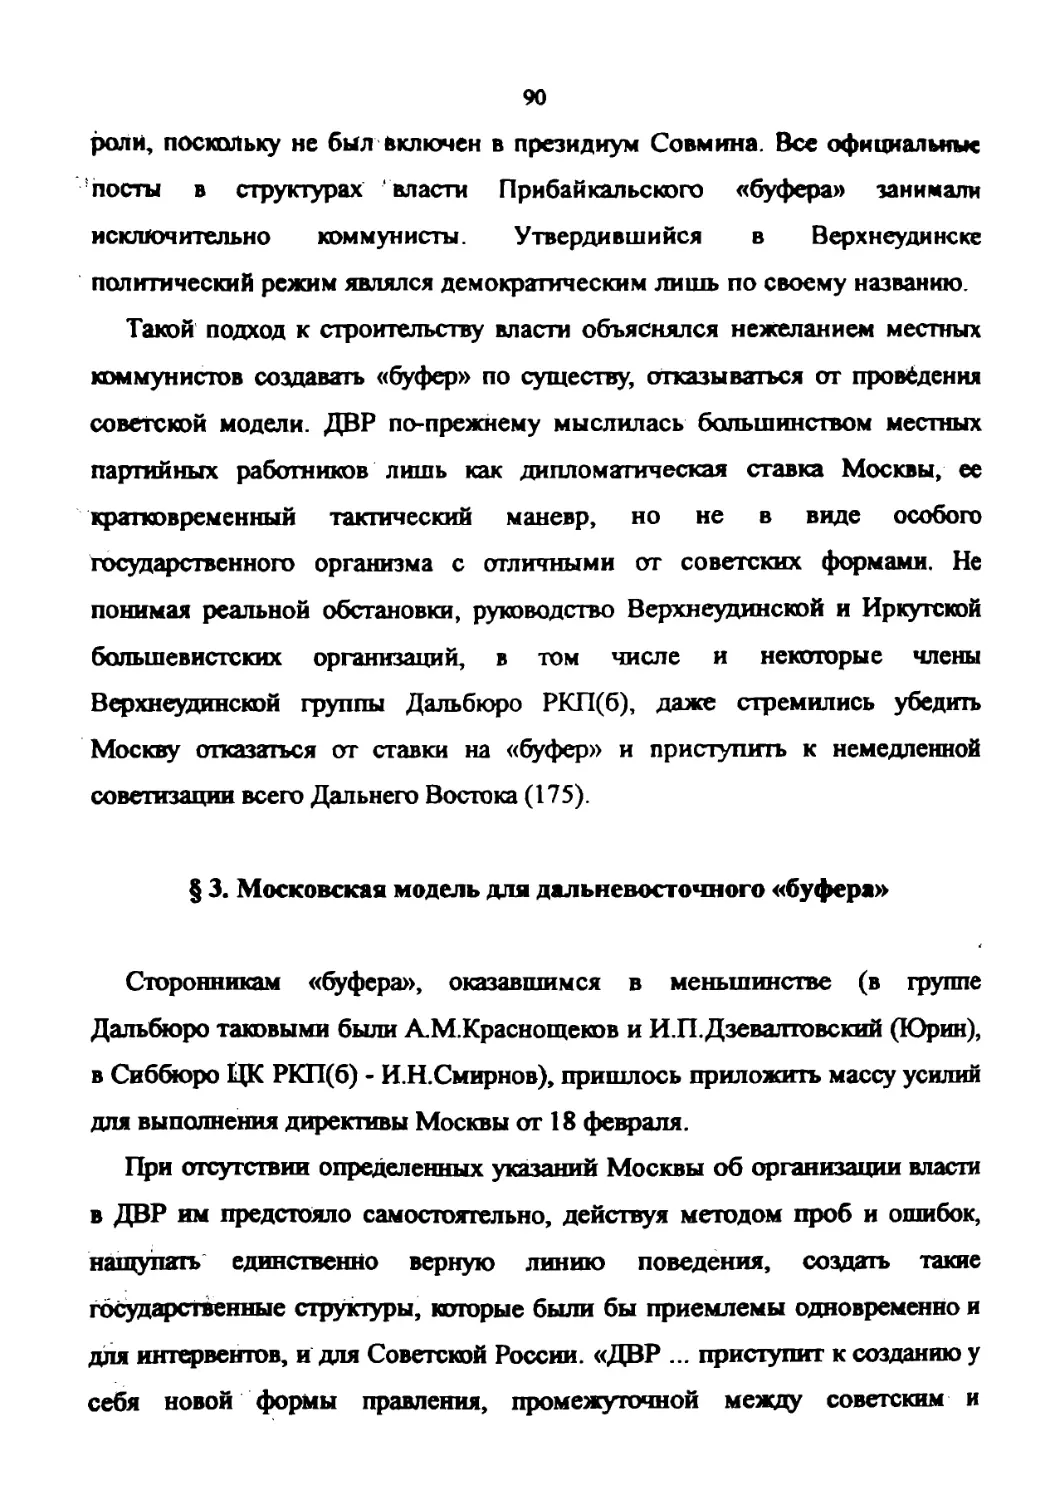 § 3. Московская модель для дальневосточного «буфера»